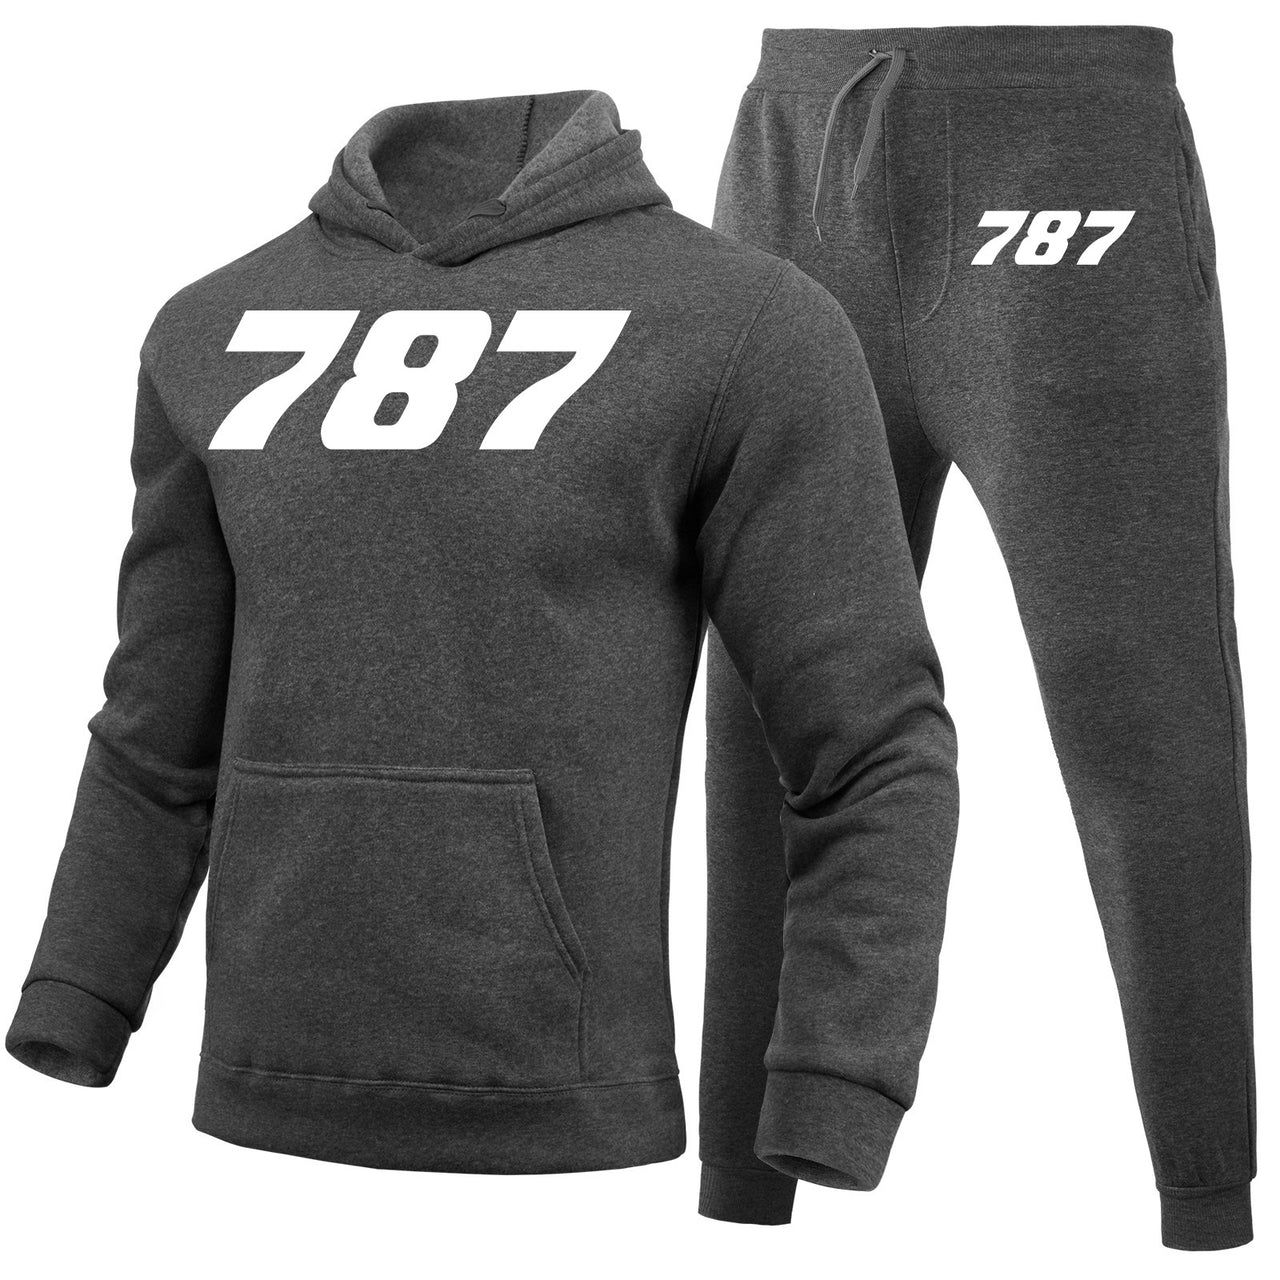 787 Flat Text Designed Hoodies & Sweatpants Set